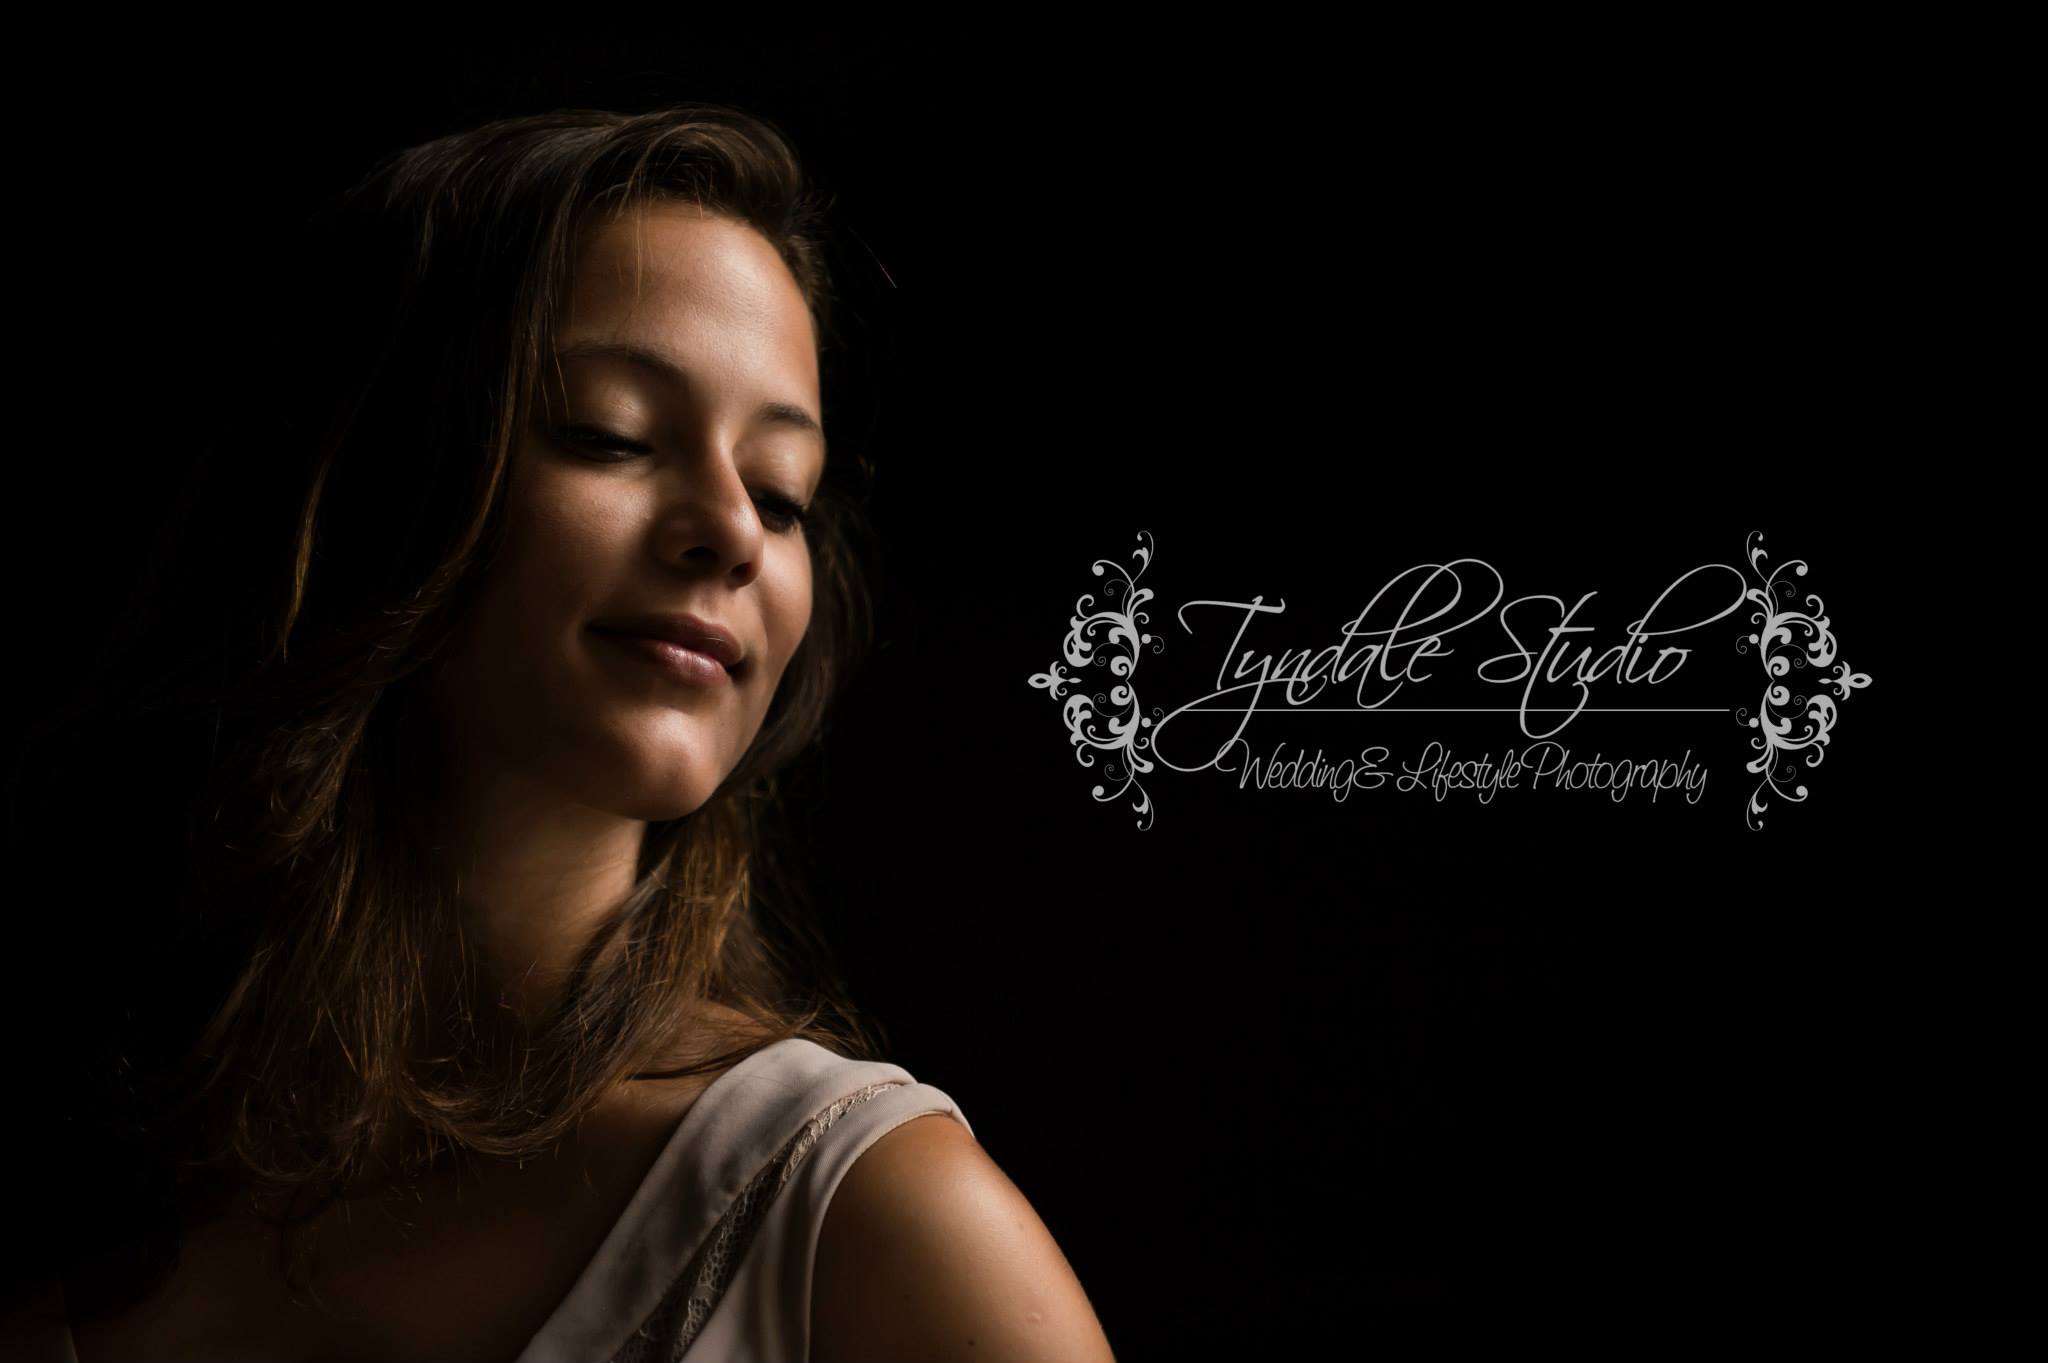 Tyndale Studio – Wedding & Lifestyle Photography